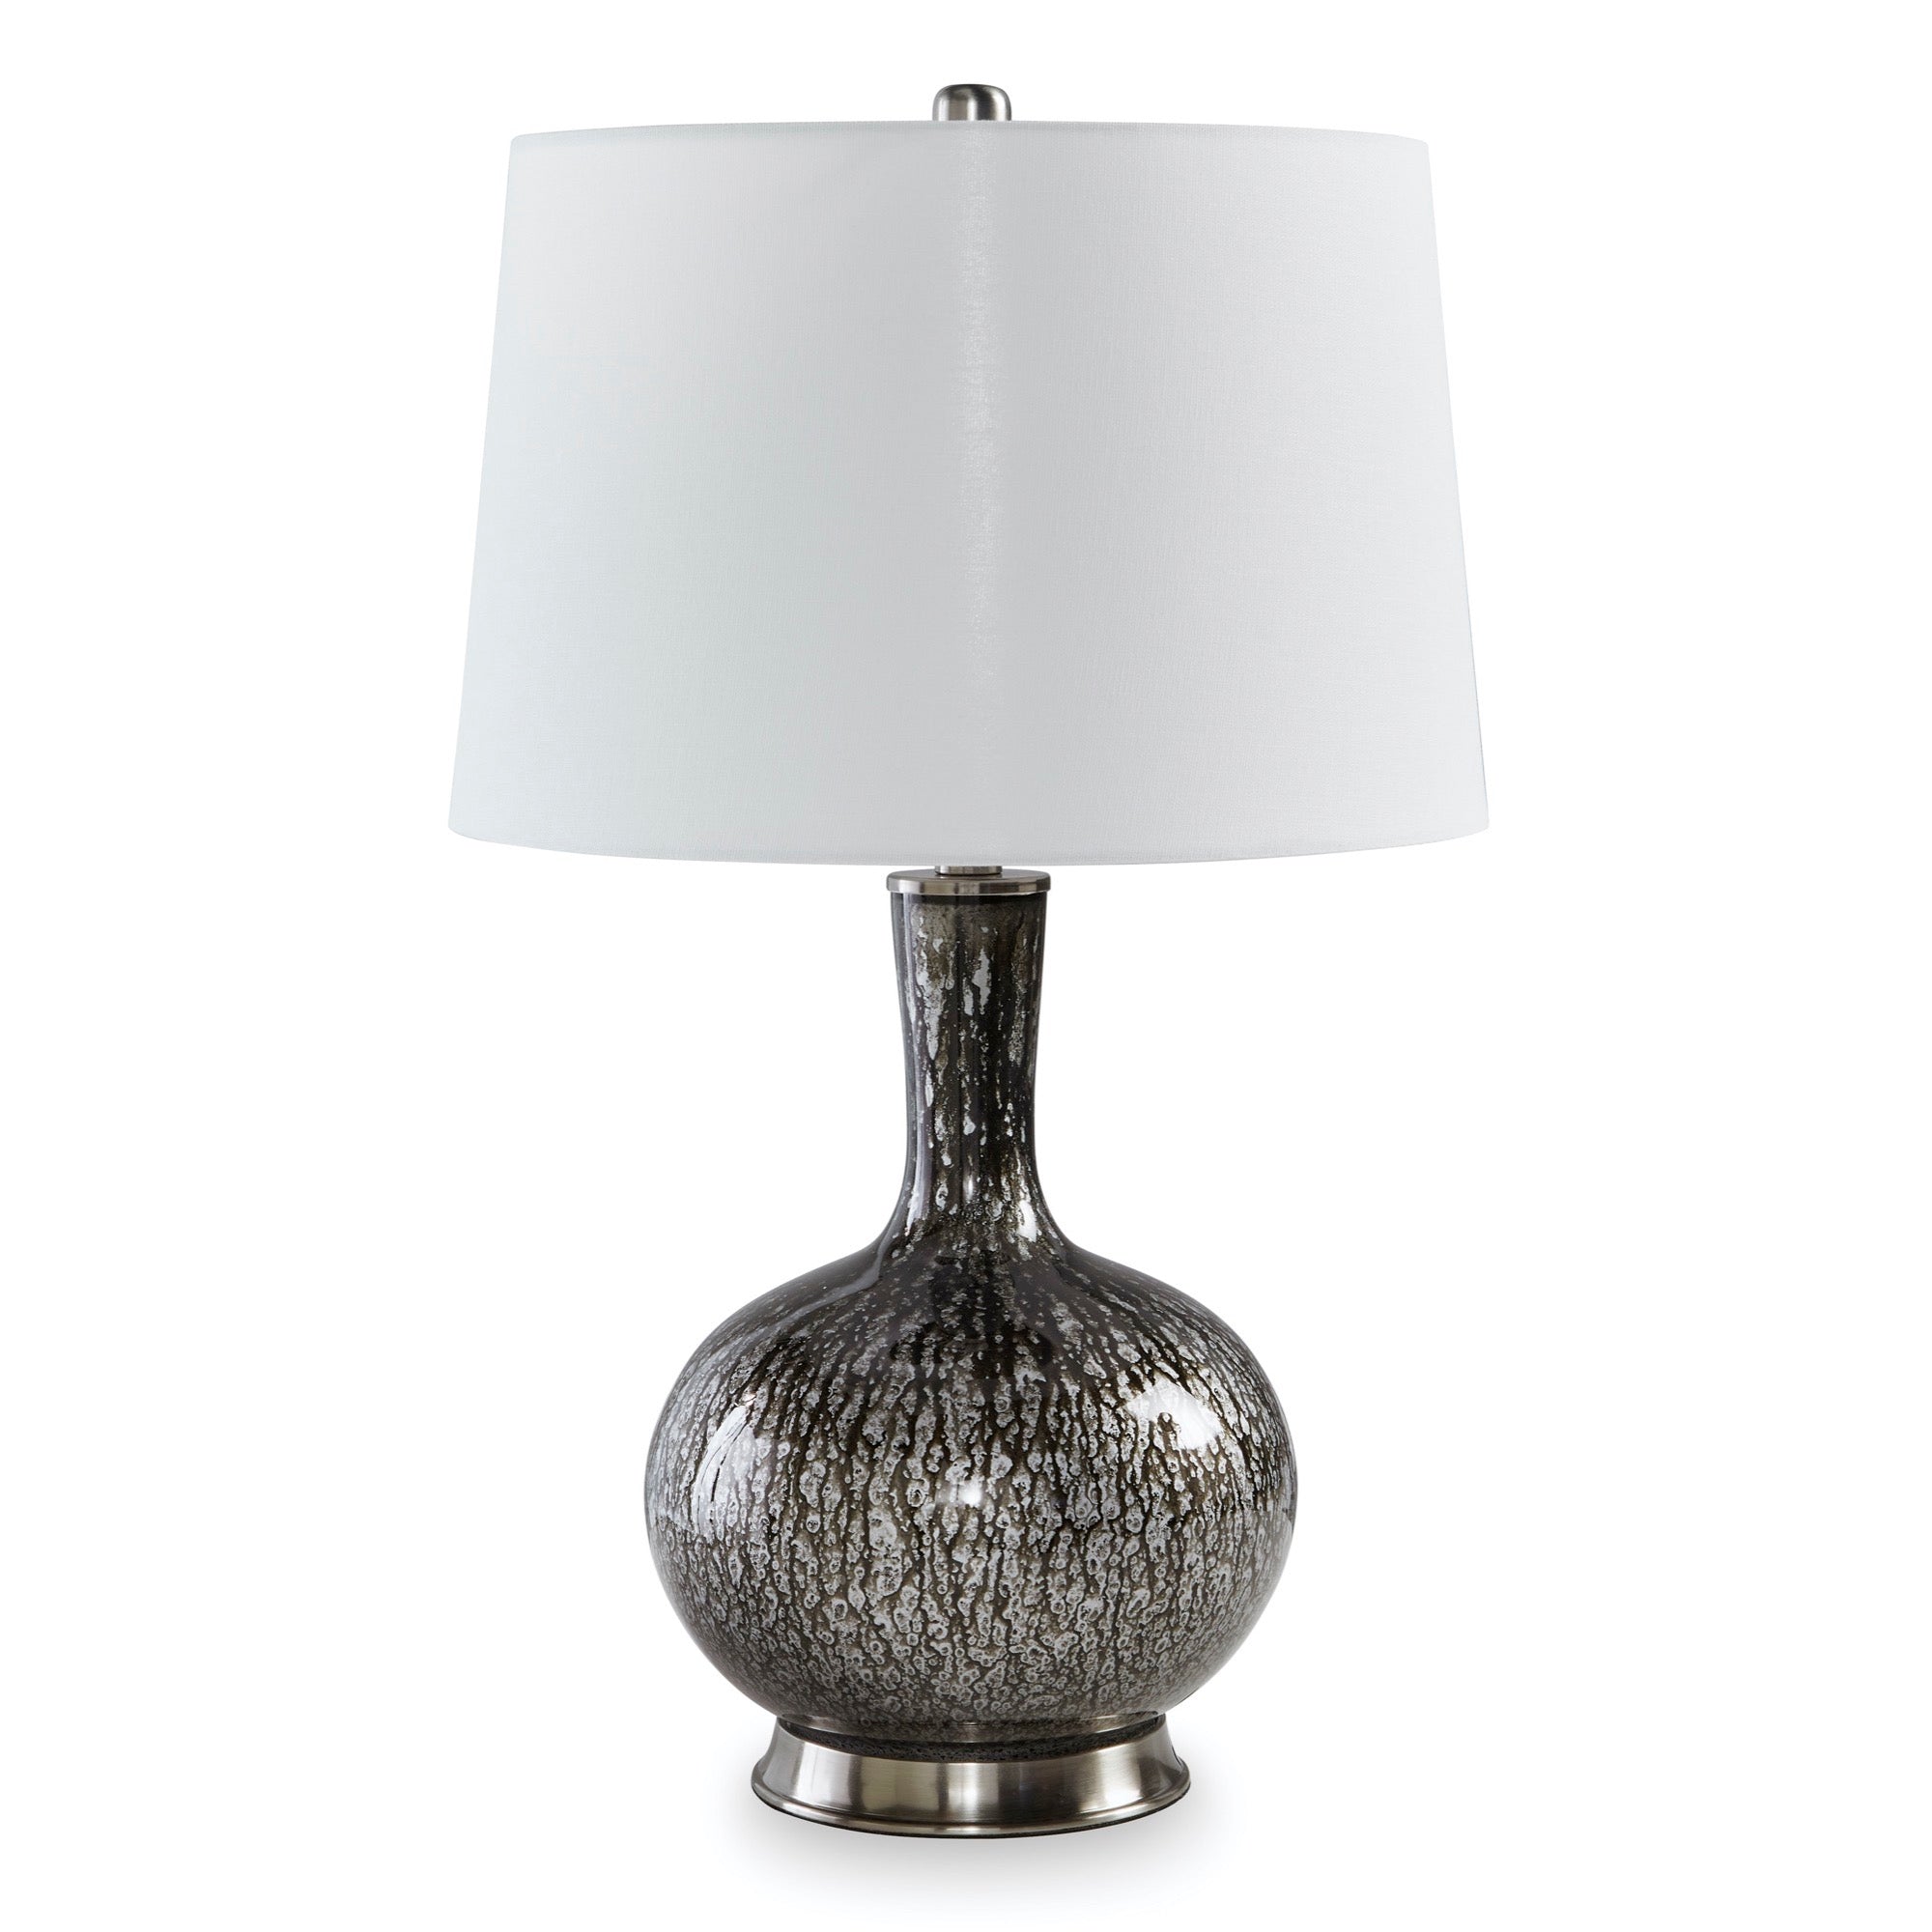 Tenslow Table Lamp